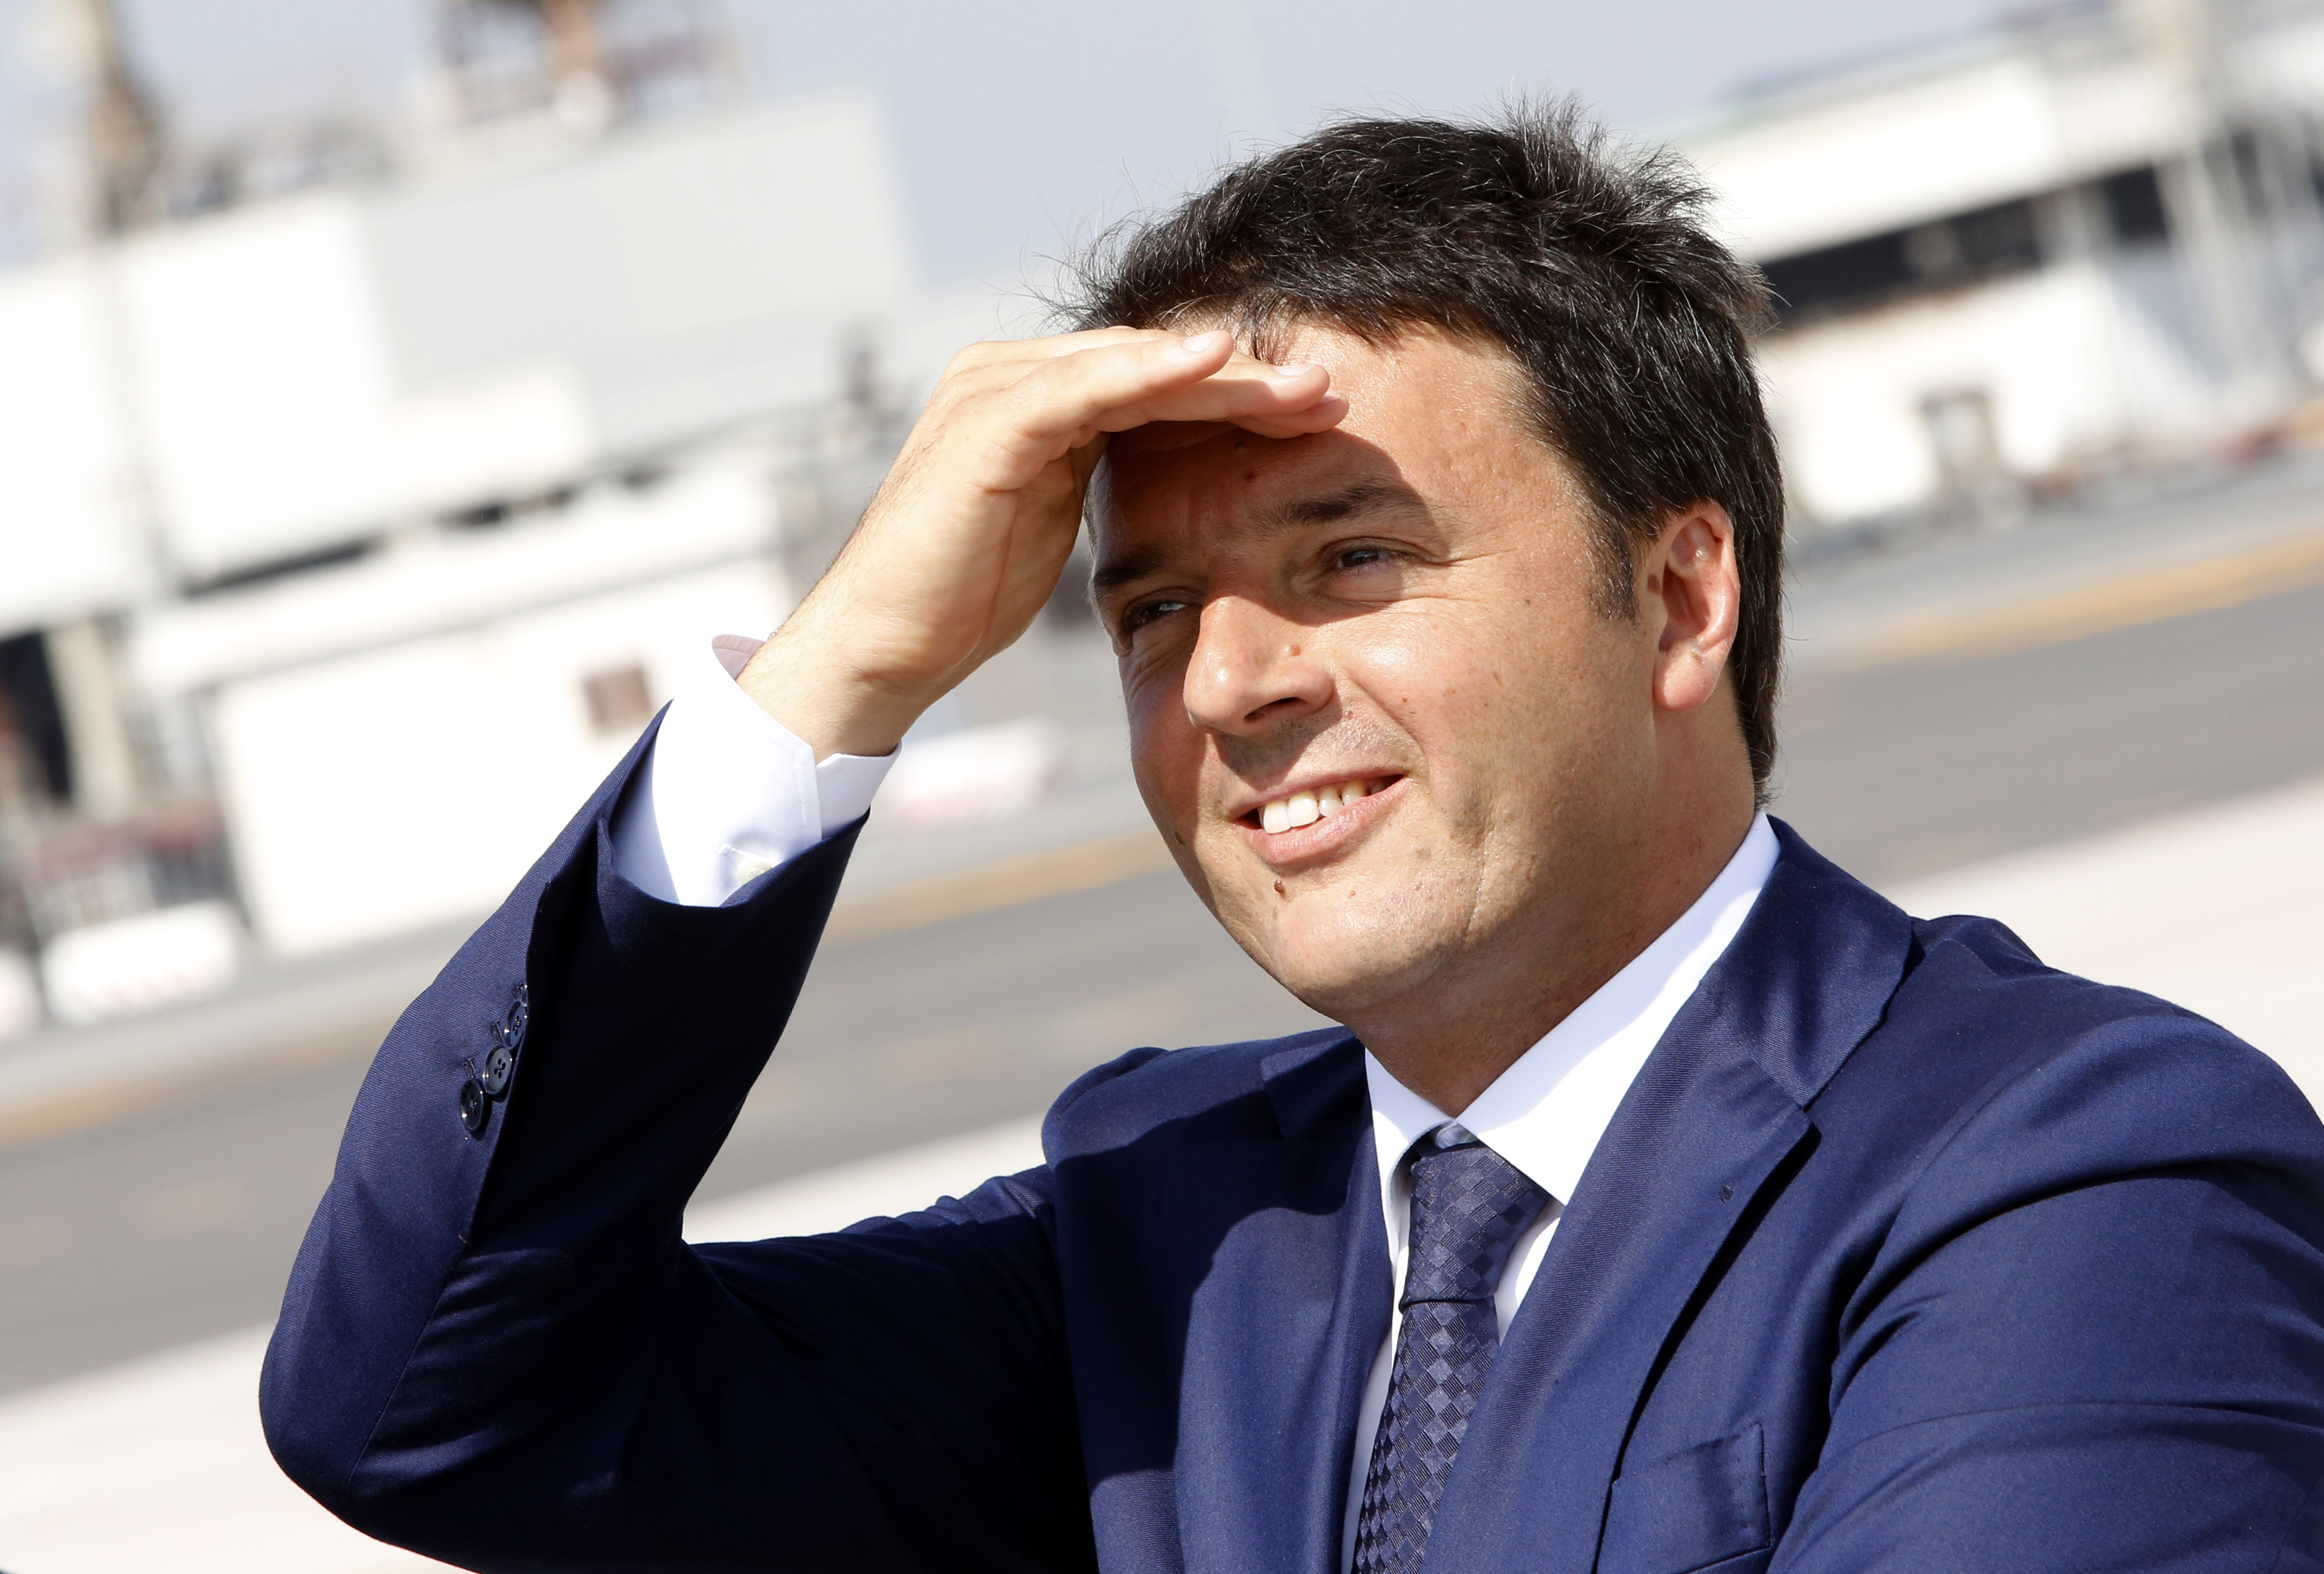 Ρέντσι:«Η κρίση πλήττει όλη την ευρωζώνη και όχι μόνο την Ιταλία»